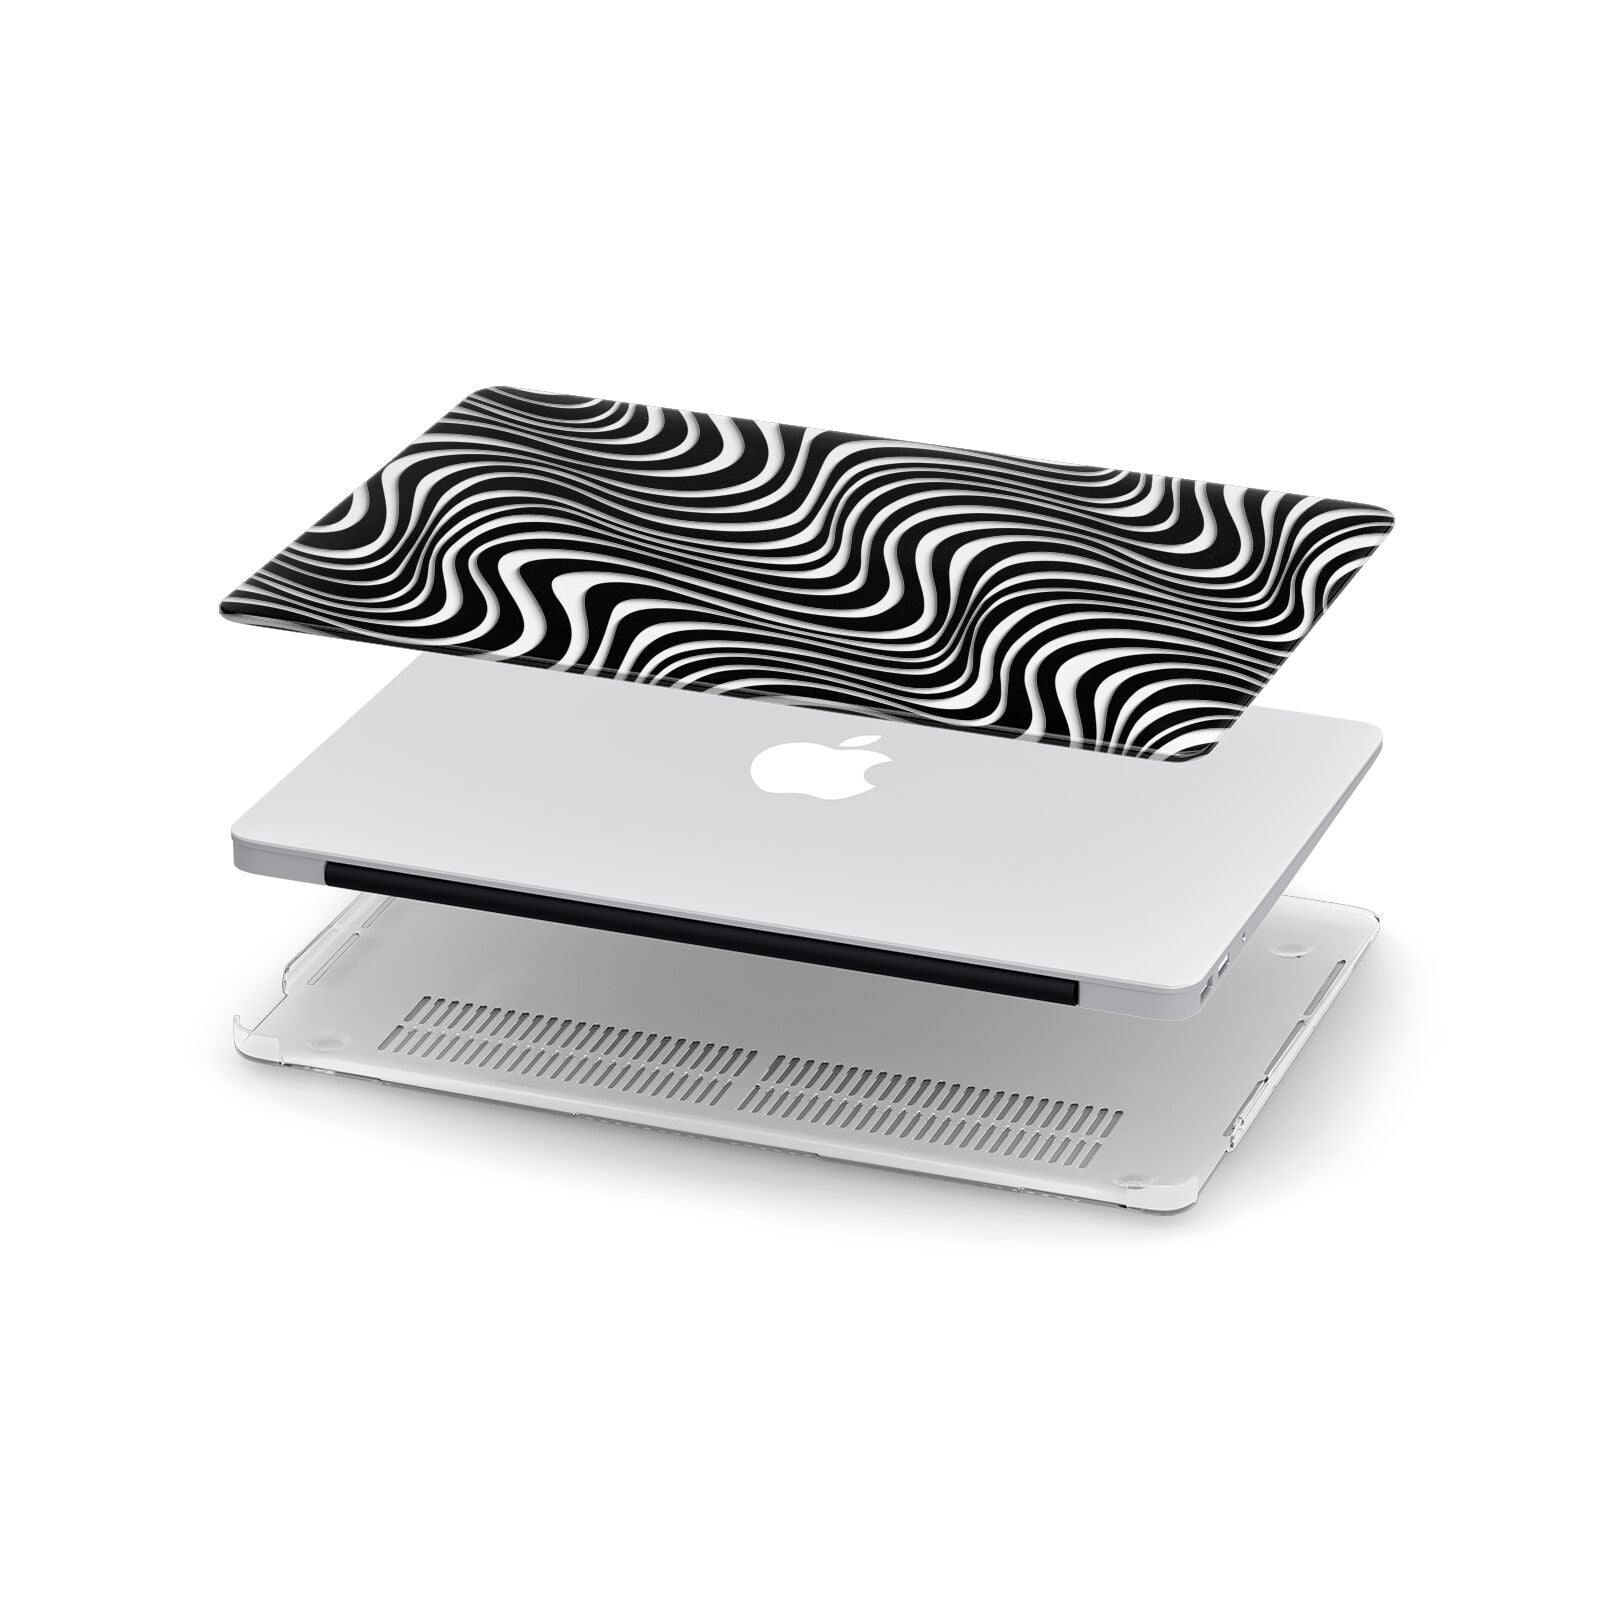 Black Wave Apple MacBook Case in Detail